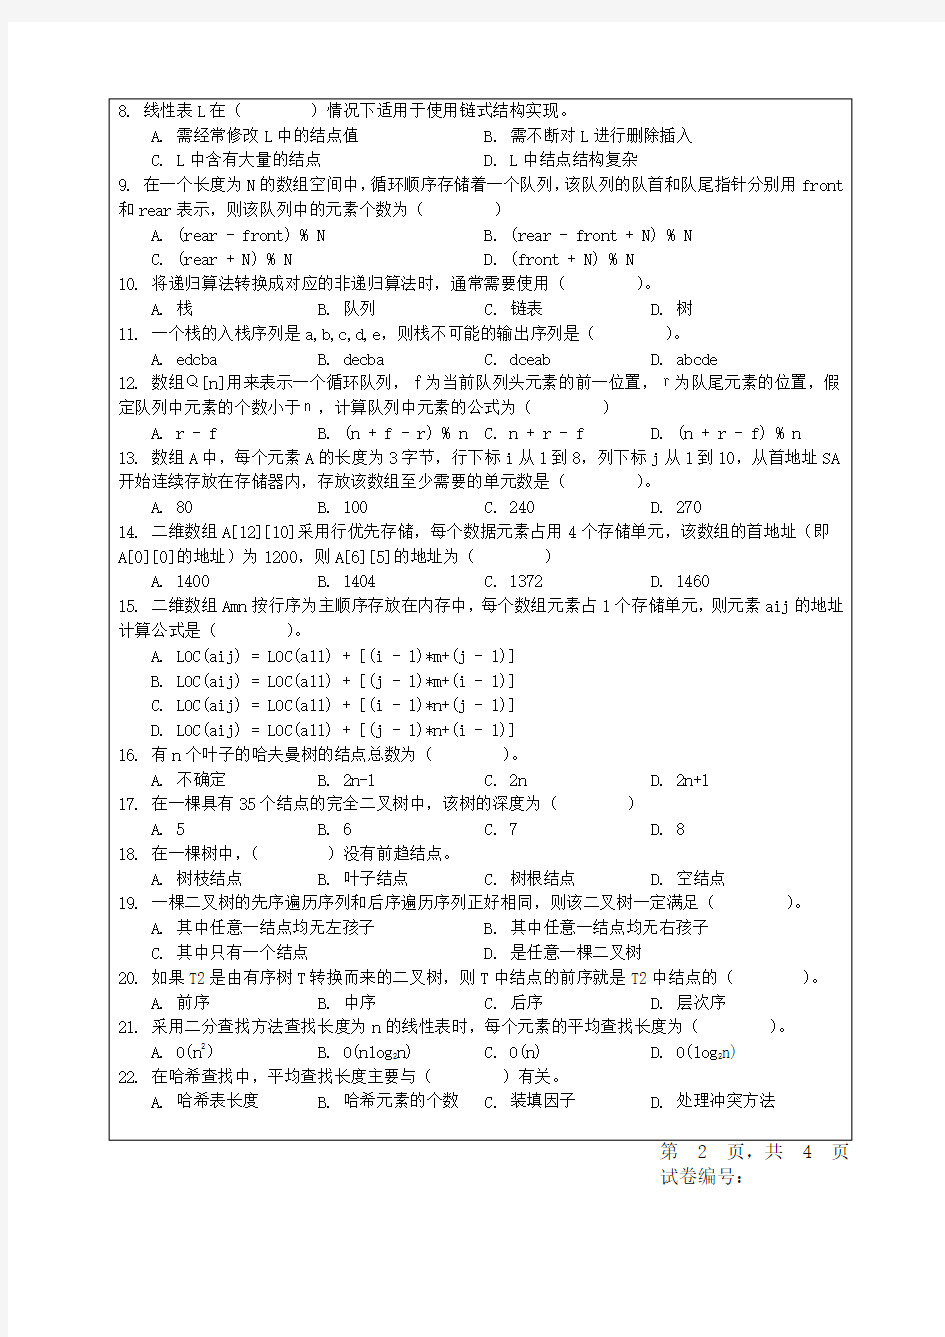 四川大学阶段期中期末考试试题(开卷闭卷)